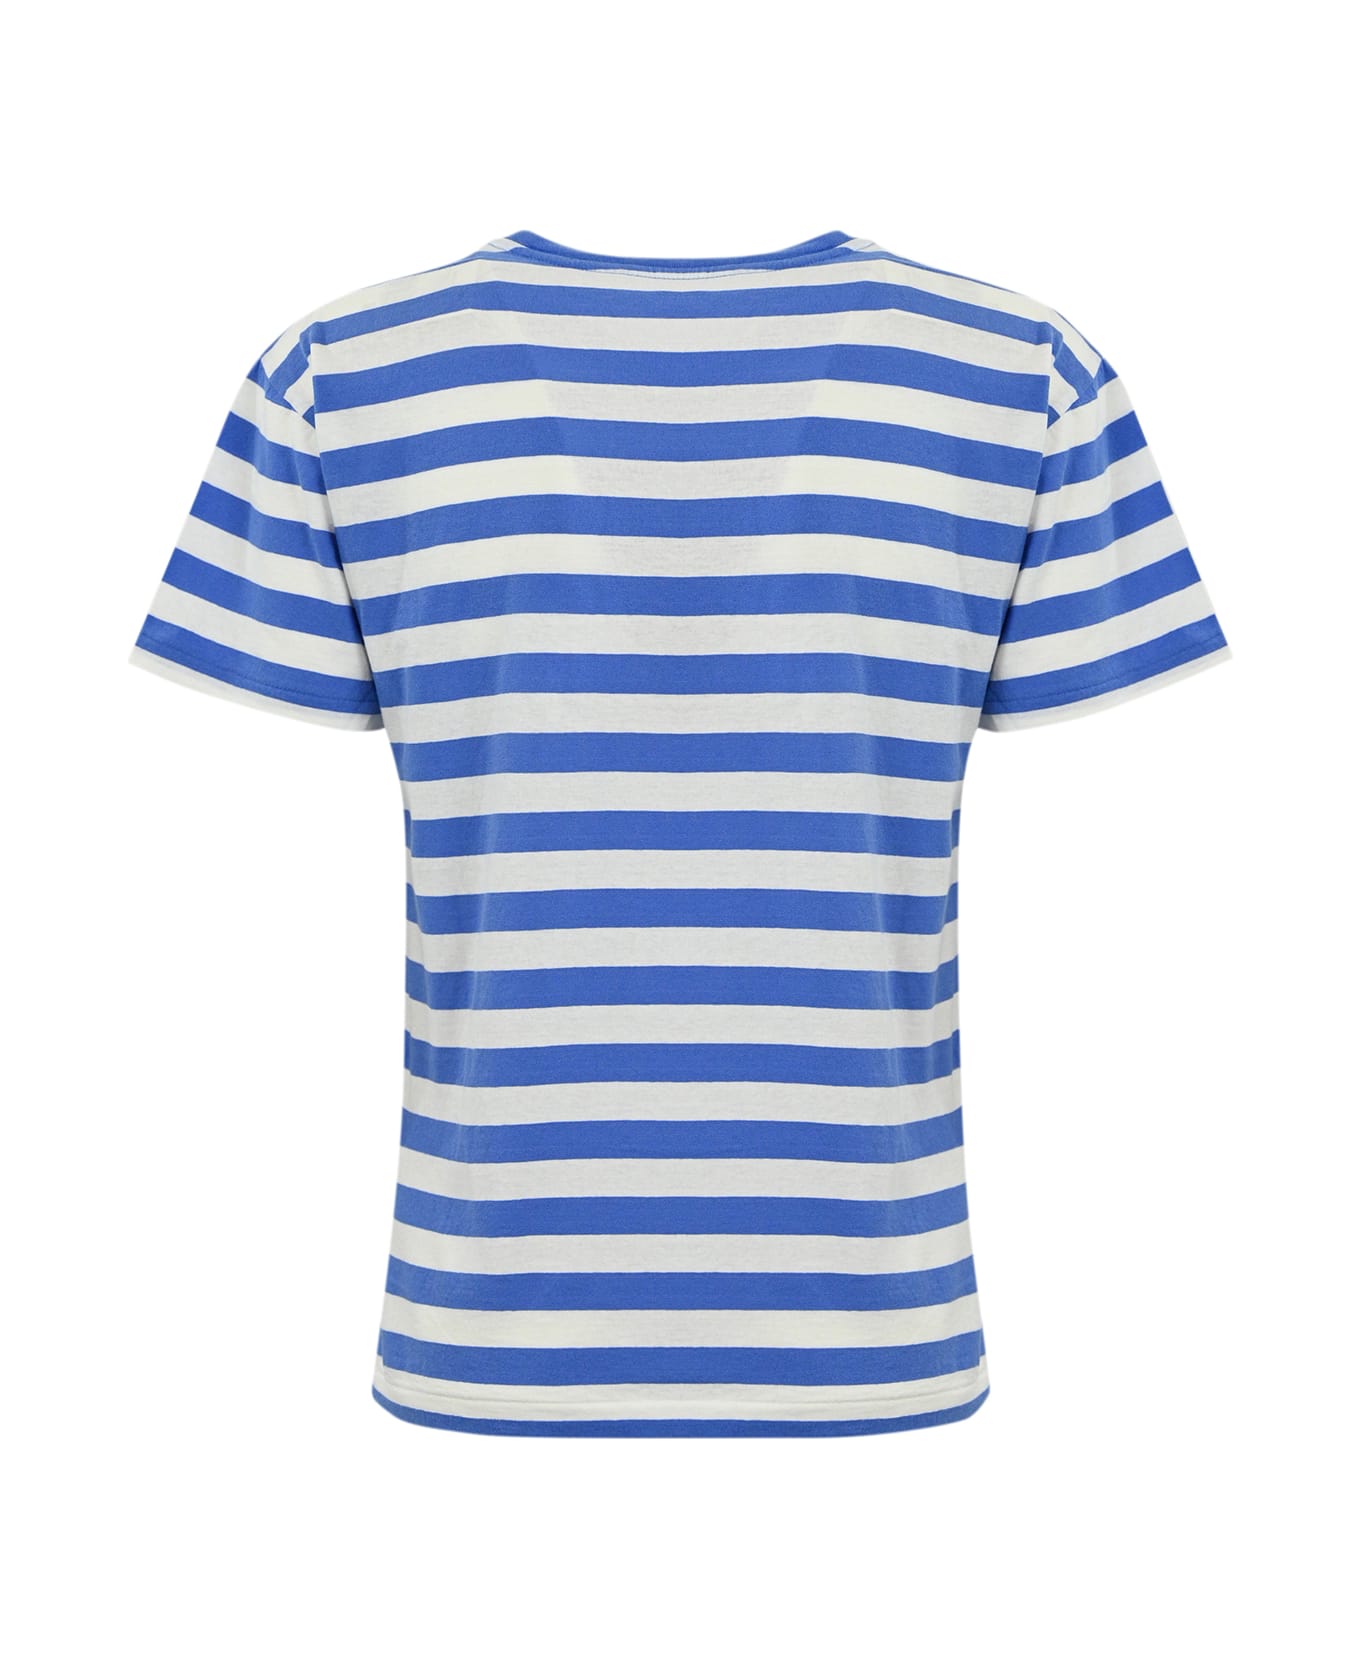 Polo Ralph Lauren T-Shirt - RESORT BLUE/WHITE STRIPE Tシャツ